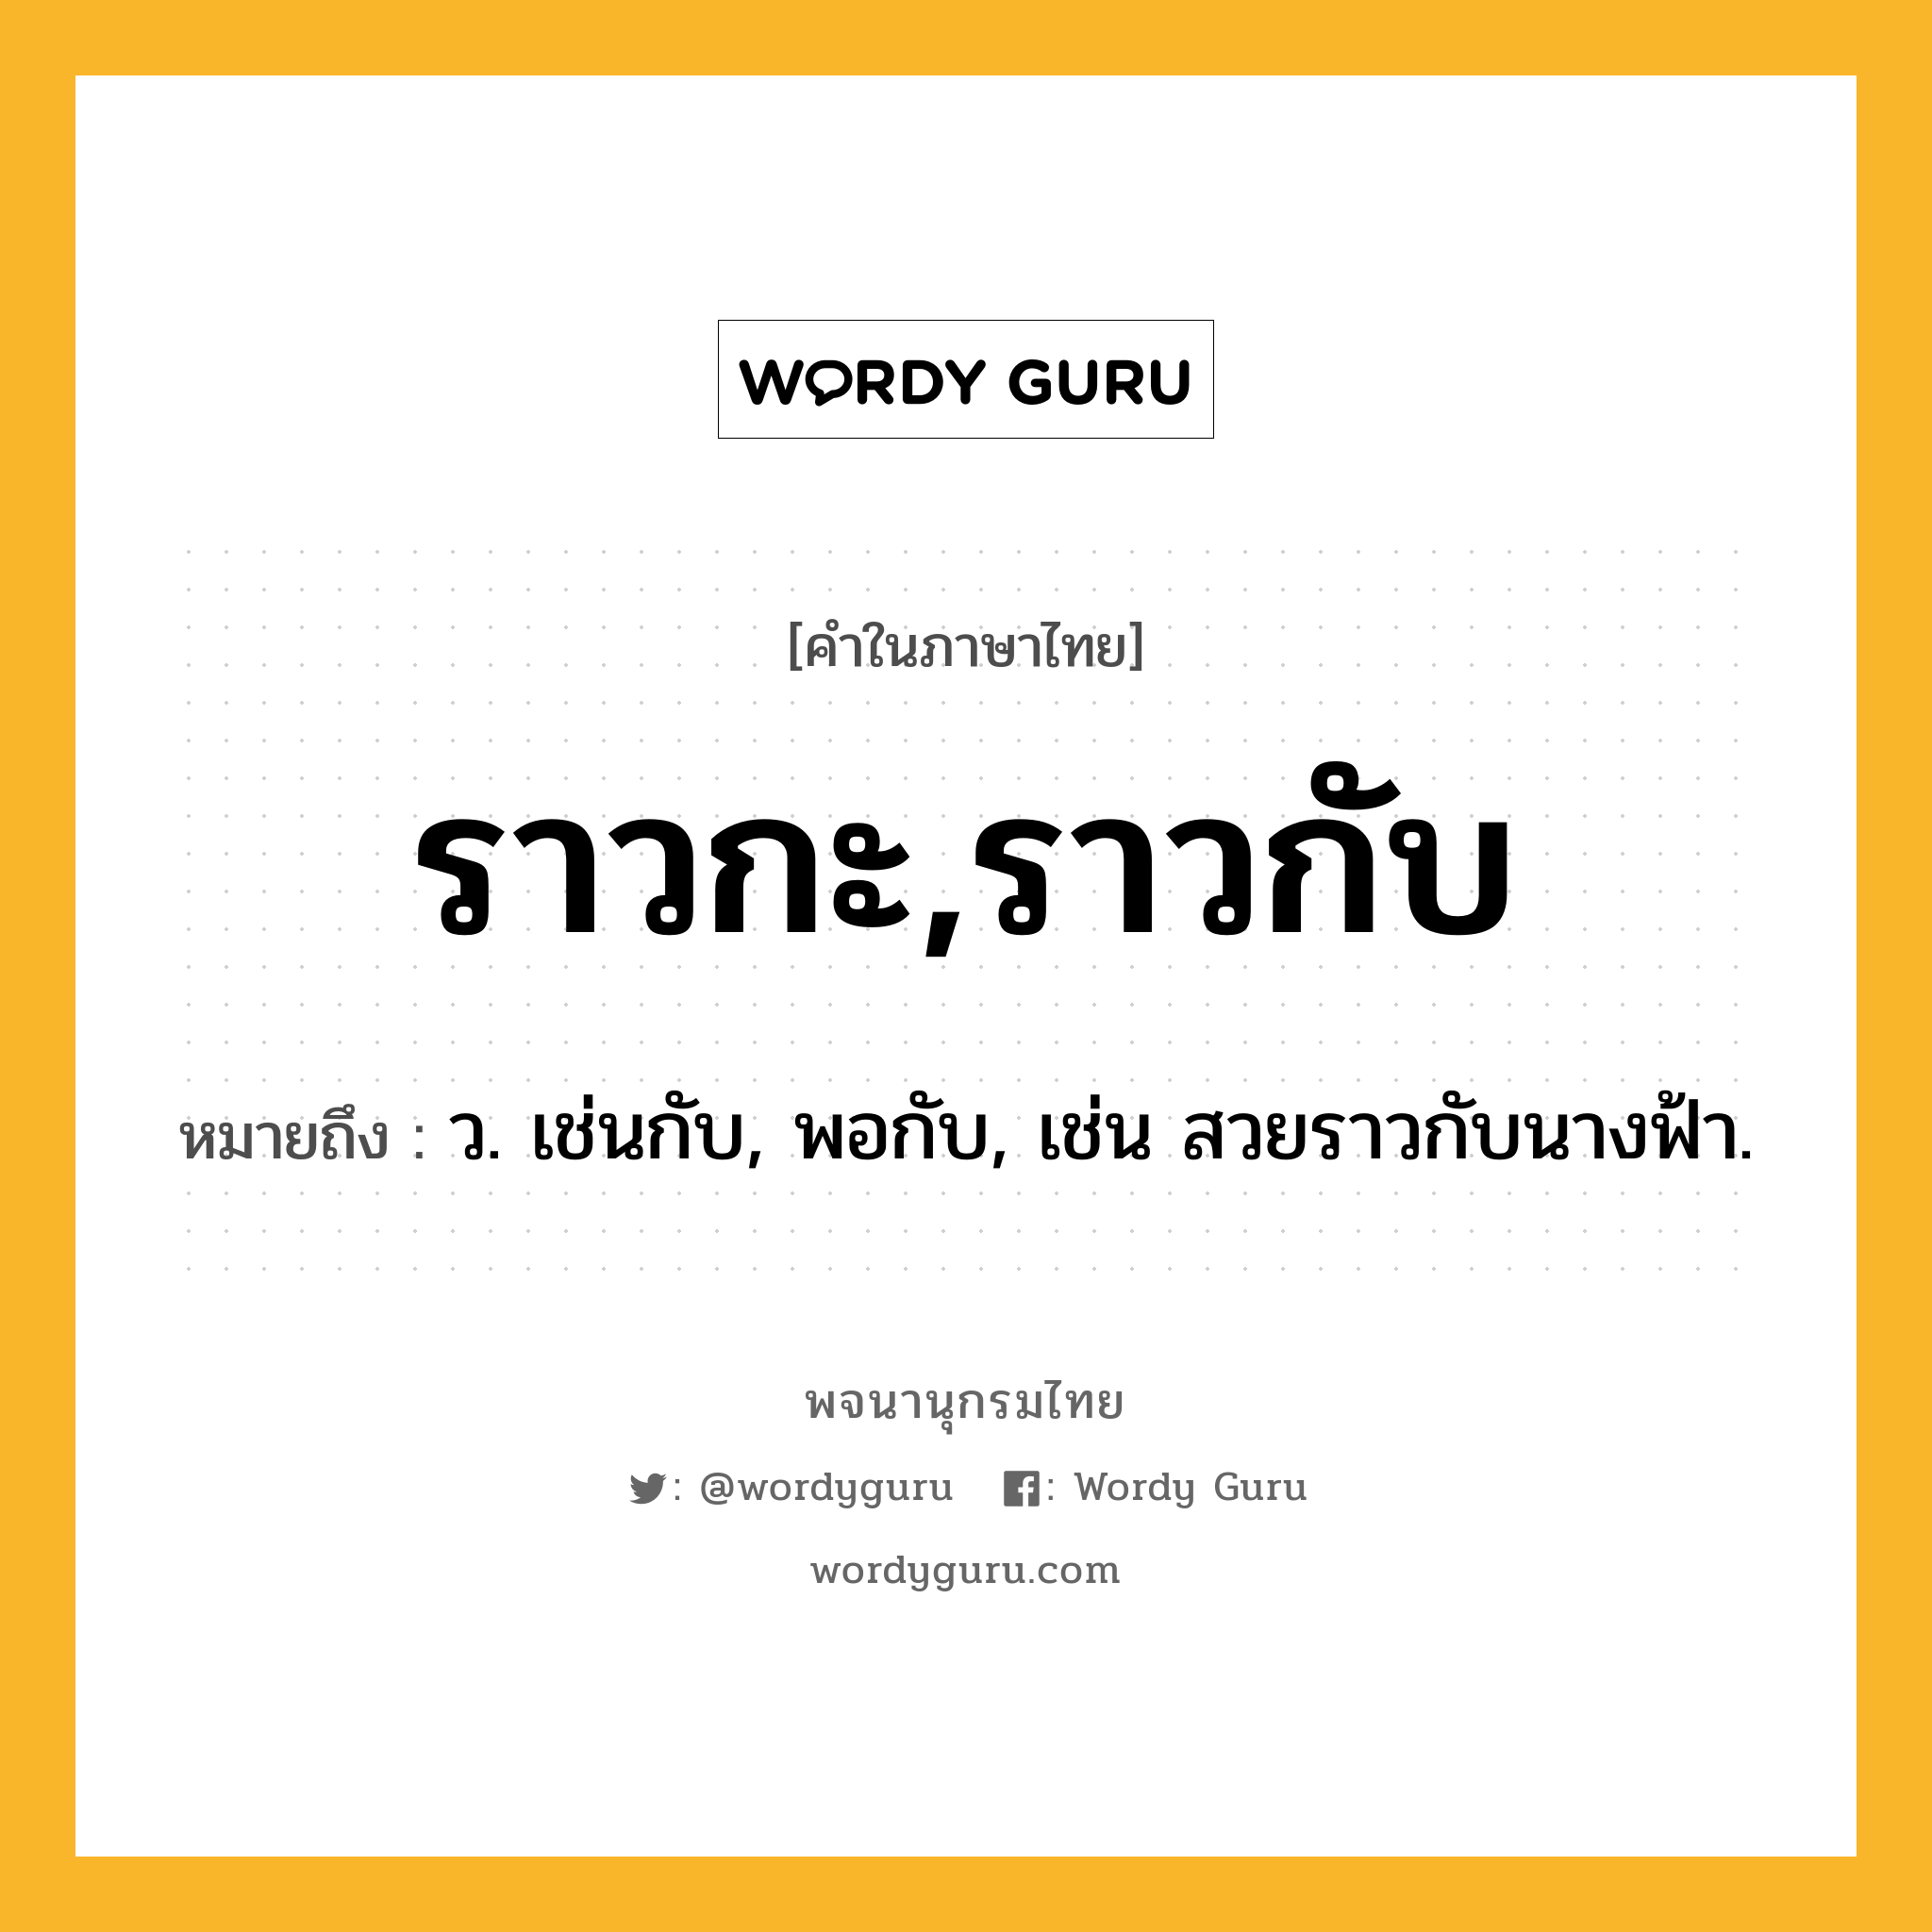 ราวกะ,ราวกับ ความหมาย หมายถึงอะไร?, คำในภาษาไทย ราวกะ,ราวกับ หมายถึง ว. เช่นกับ, พอกับ, เช่น สวยราวกับนางฟ้า.